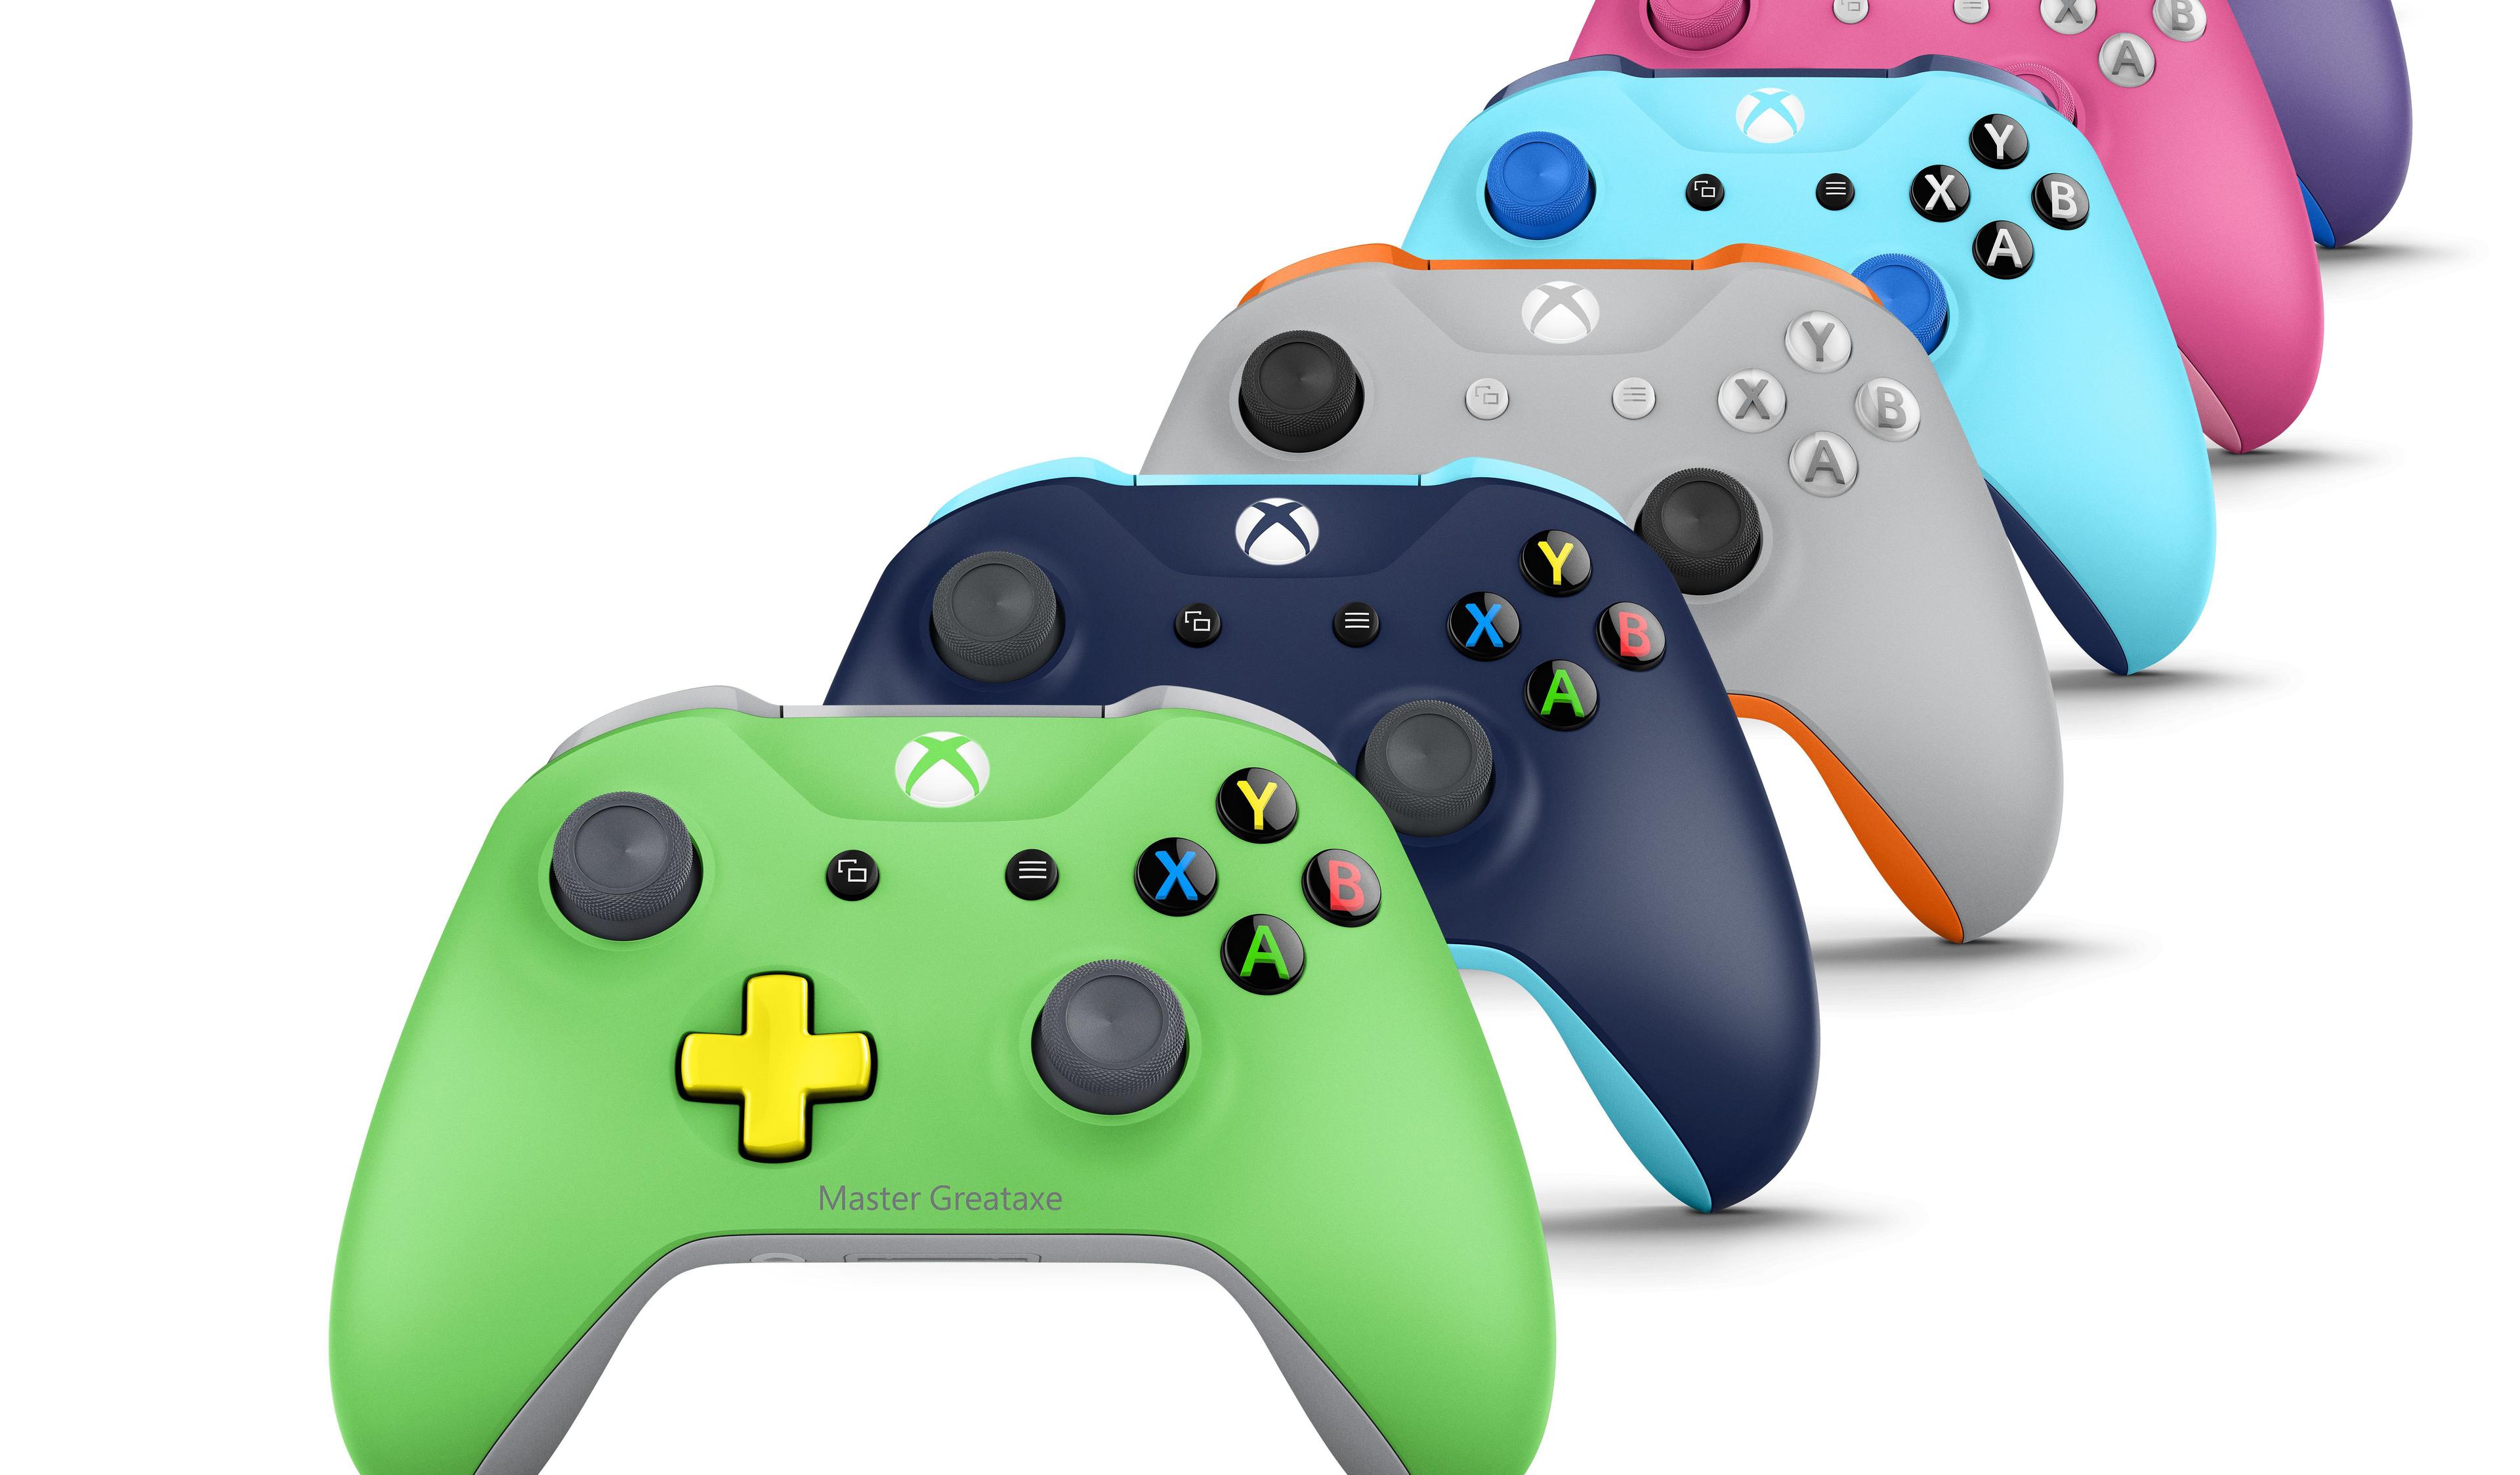 Veja mais imagens dos novos controles personalizáveis de Xbox One